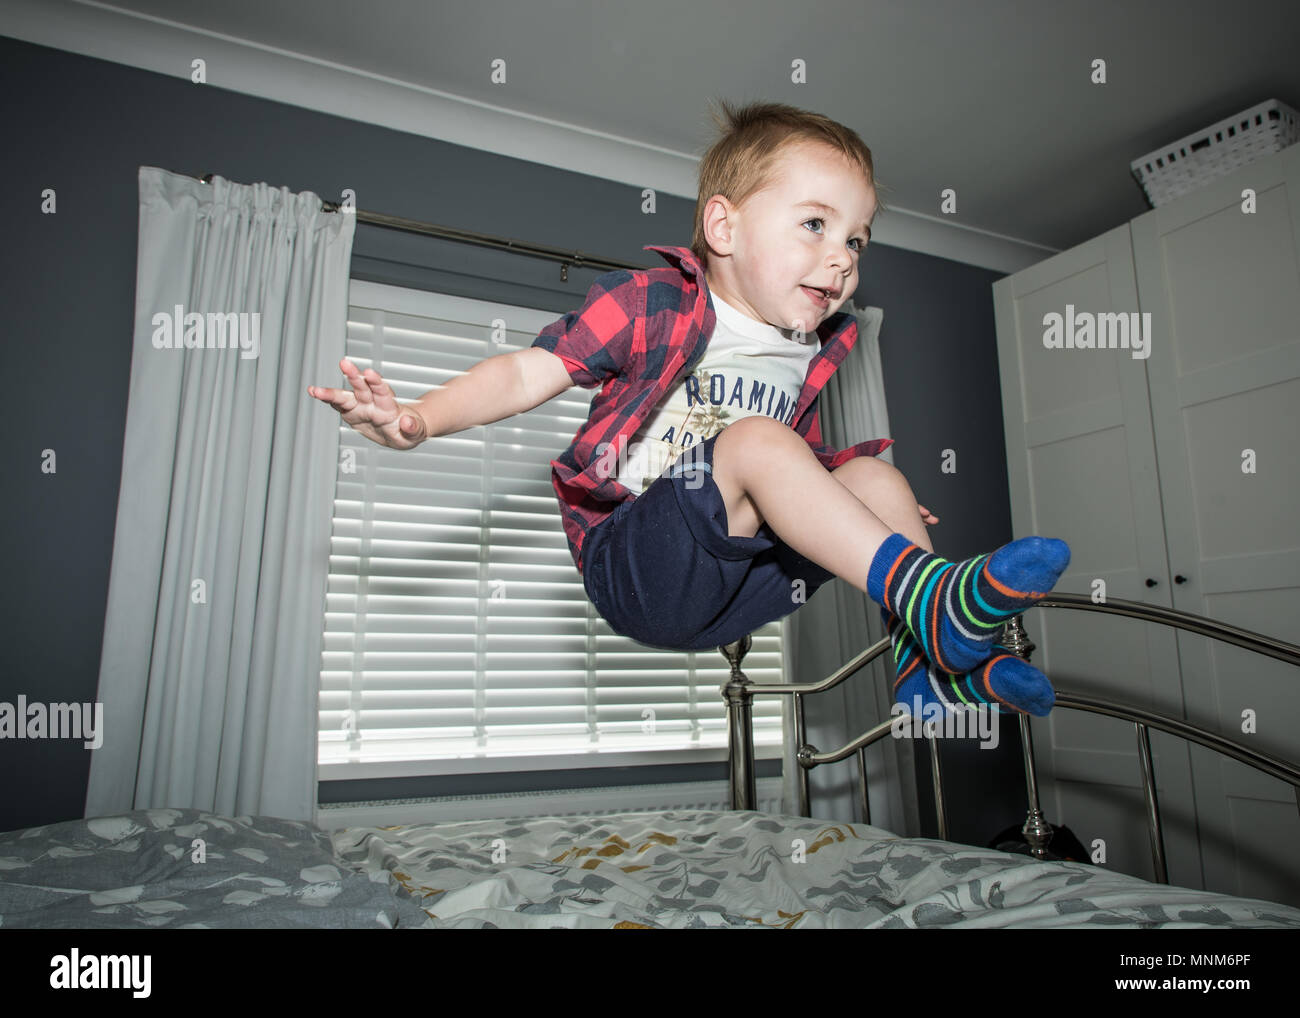 Un petit garçon saute sur un lit dans une chambre à coucher / enfant jumping on bed Banque D'Images